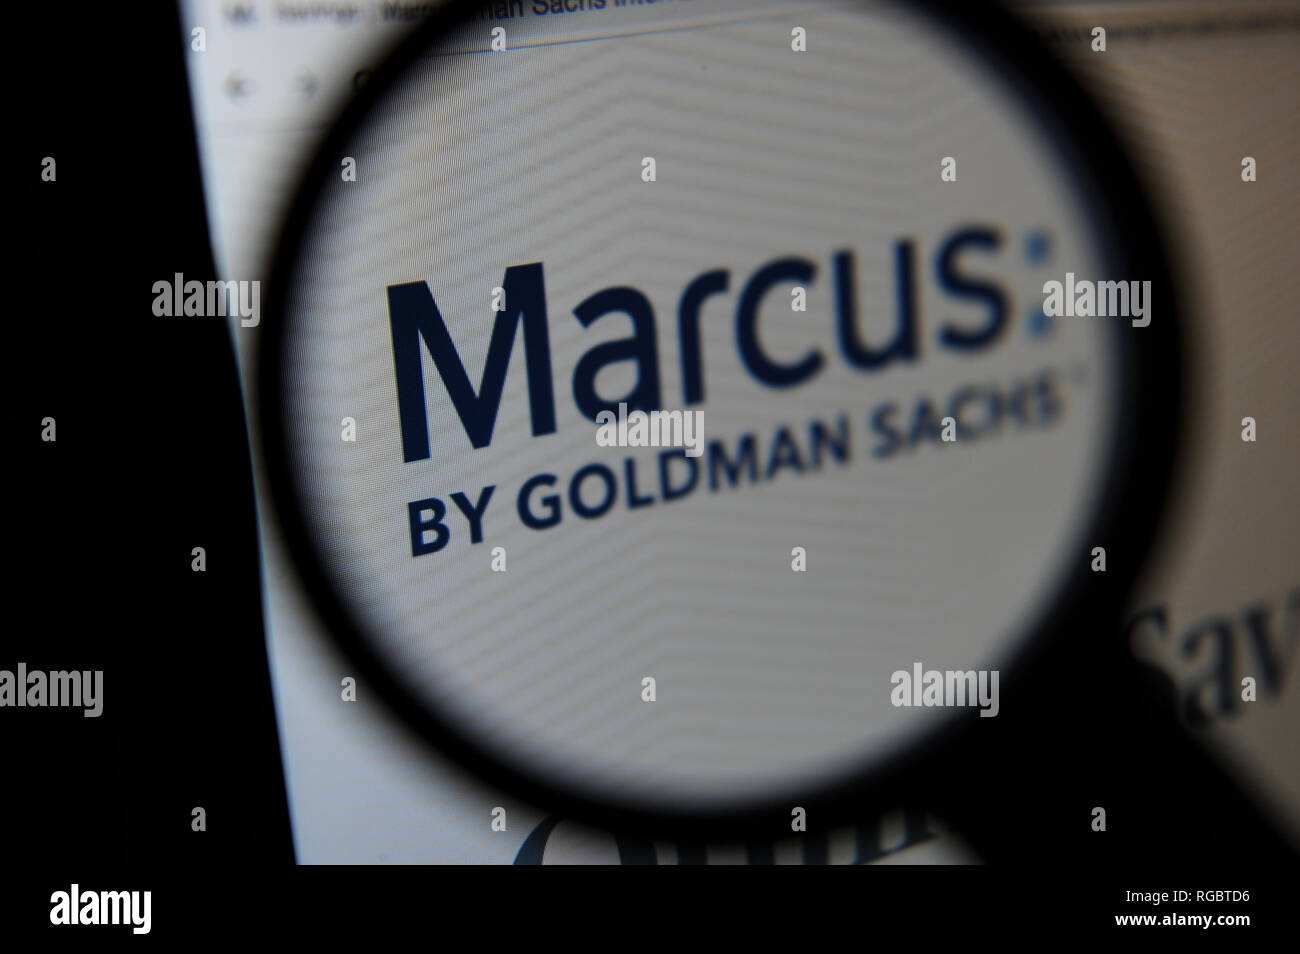 El Banco Marcus por Goldman Sachs en un ordenador Foto de stock